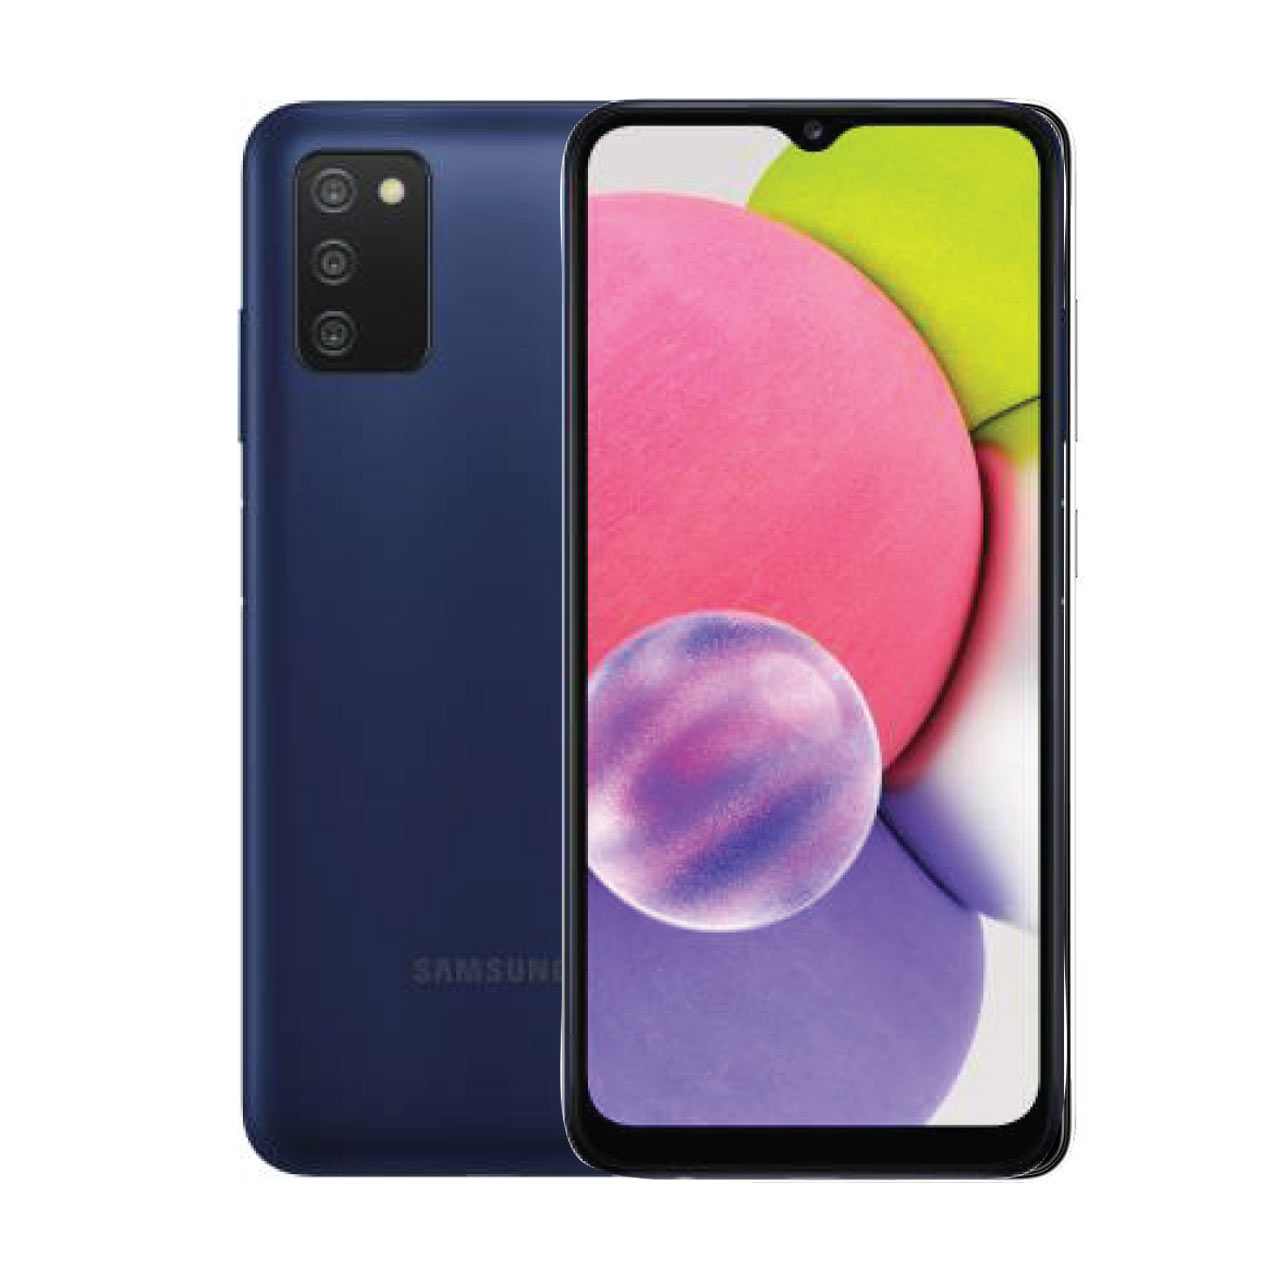  گوشی موبایل سامسونگ مدل Galaxy A03s (RAM 3) ظرفیت 32GB-آبی      